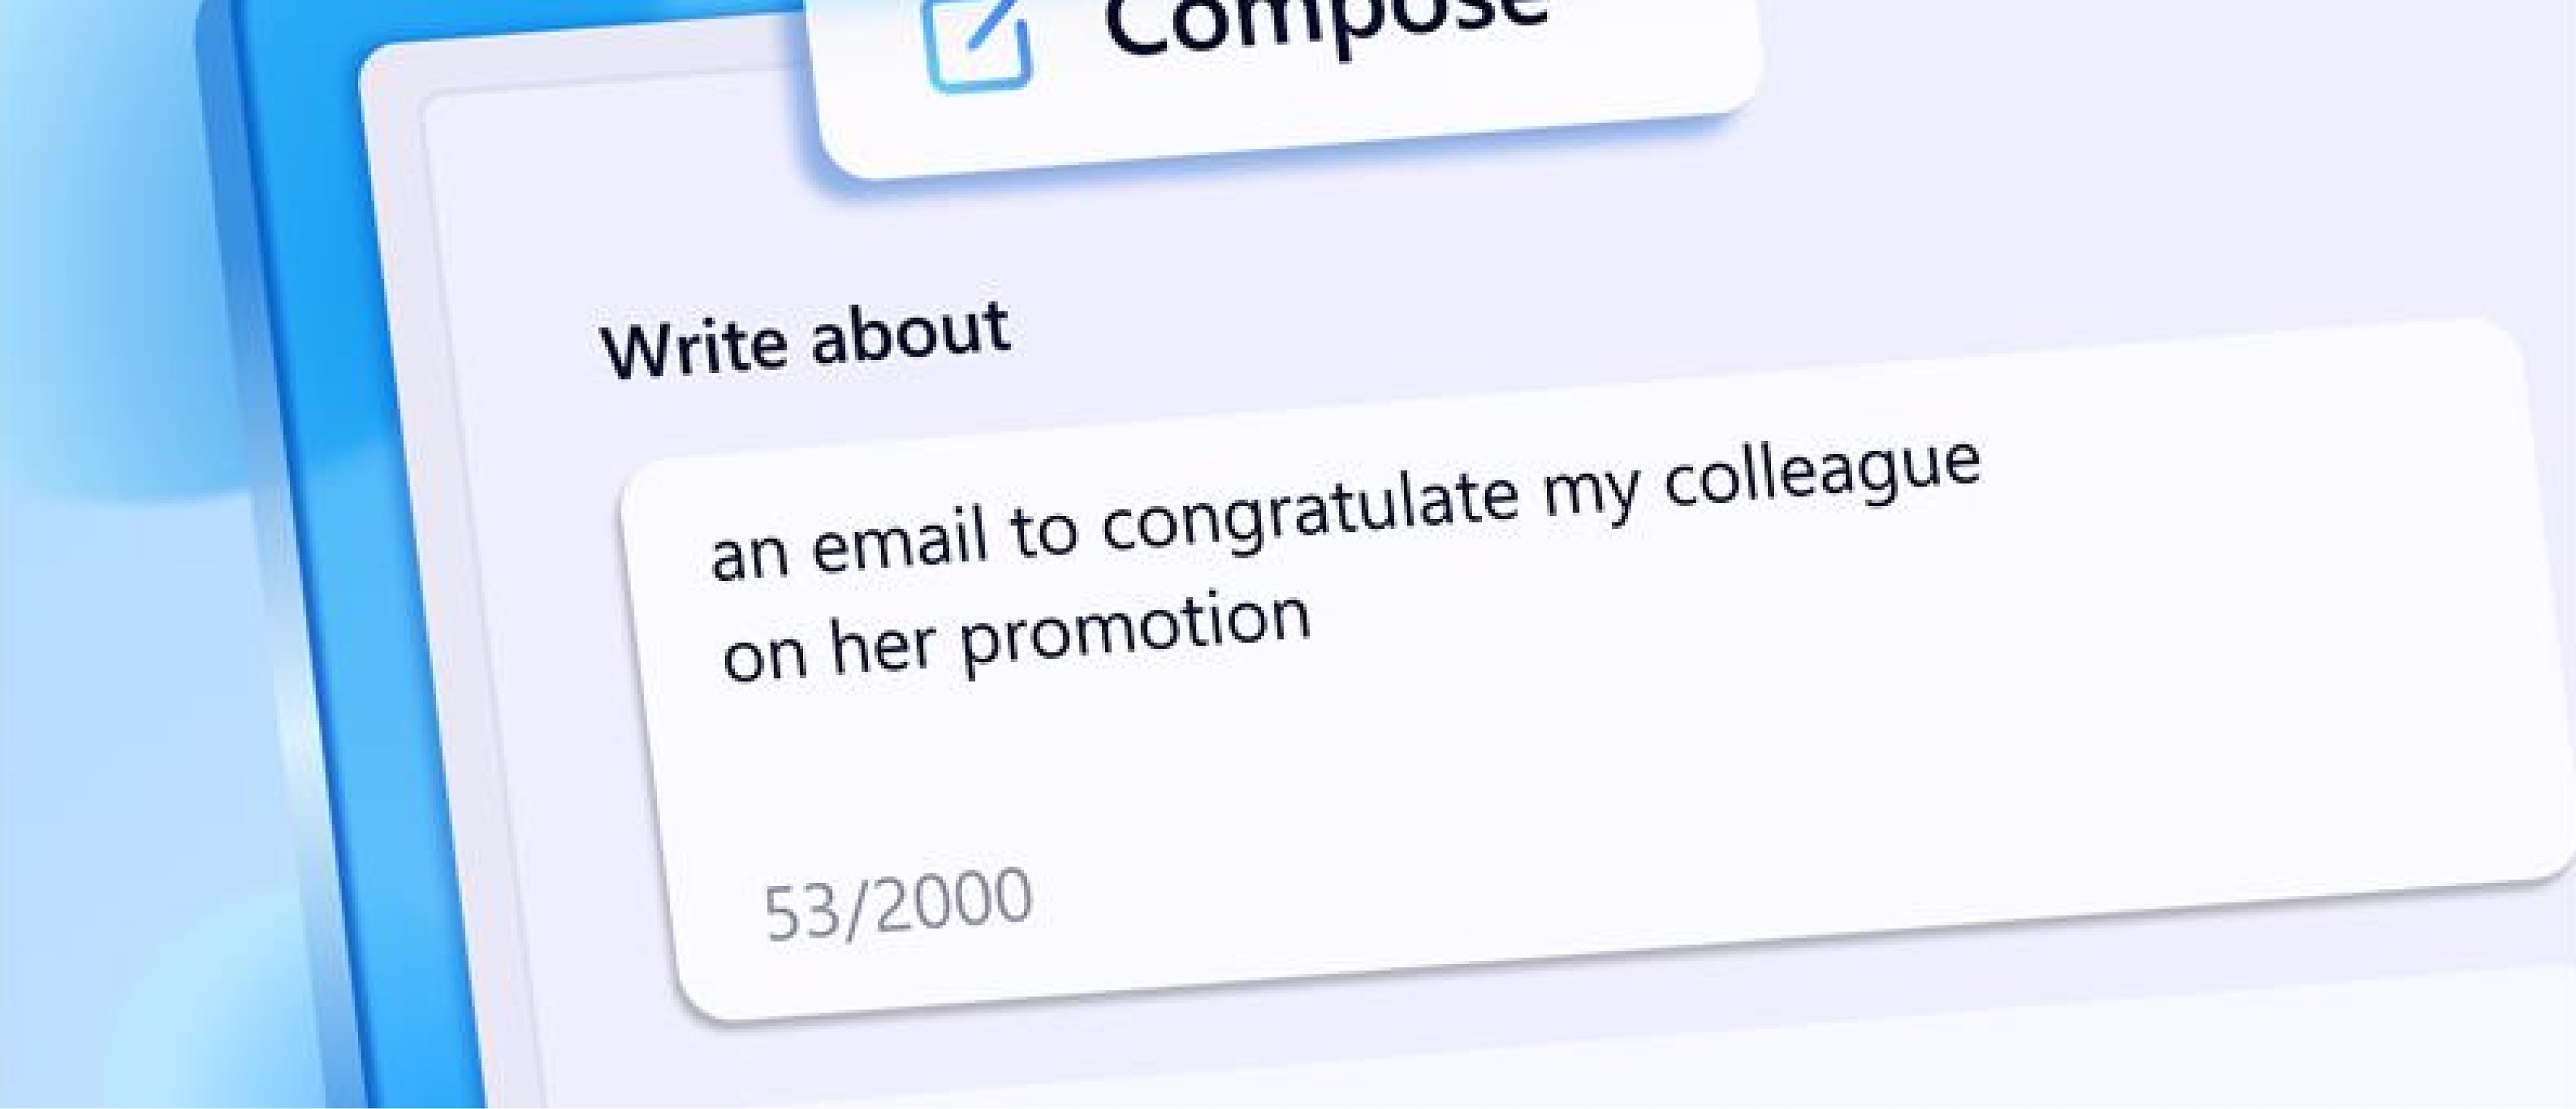 צילום מסך של הנחיה לבינה מלאכותית לכתוב הודעת דואר אלקטרוני המברכת עמיתה על הקידום שלה